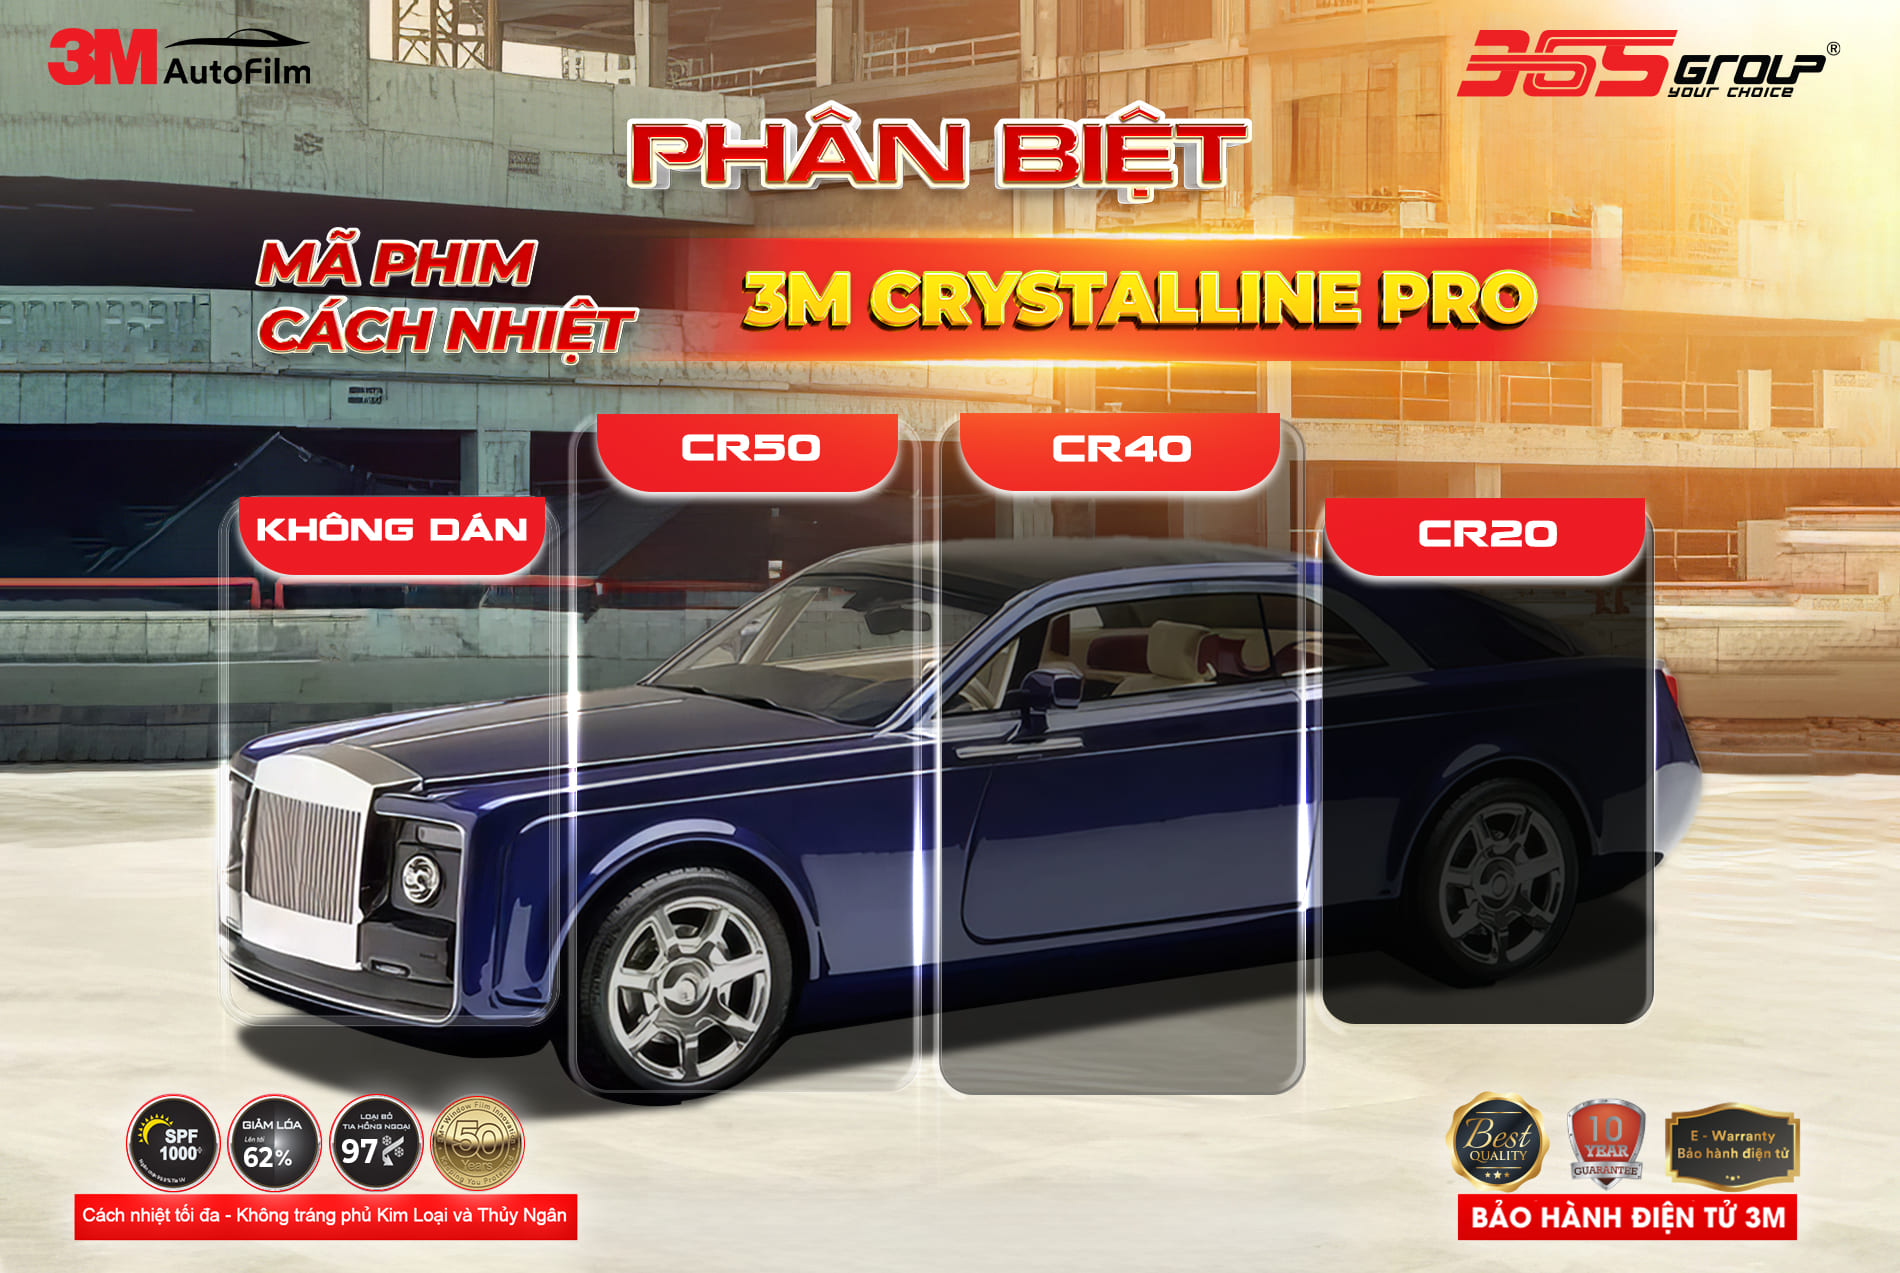 Gói giá rẻ 3M Crystalline Pro